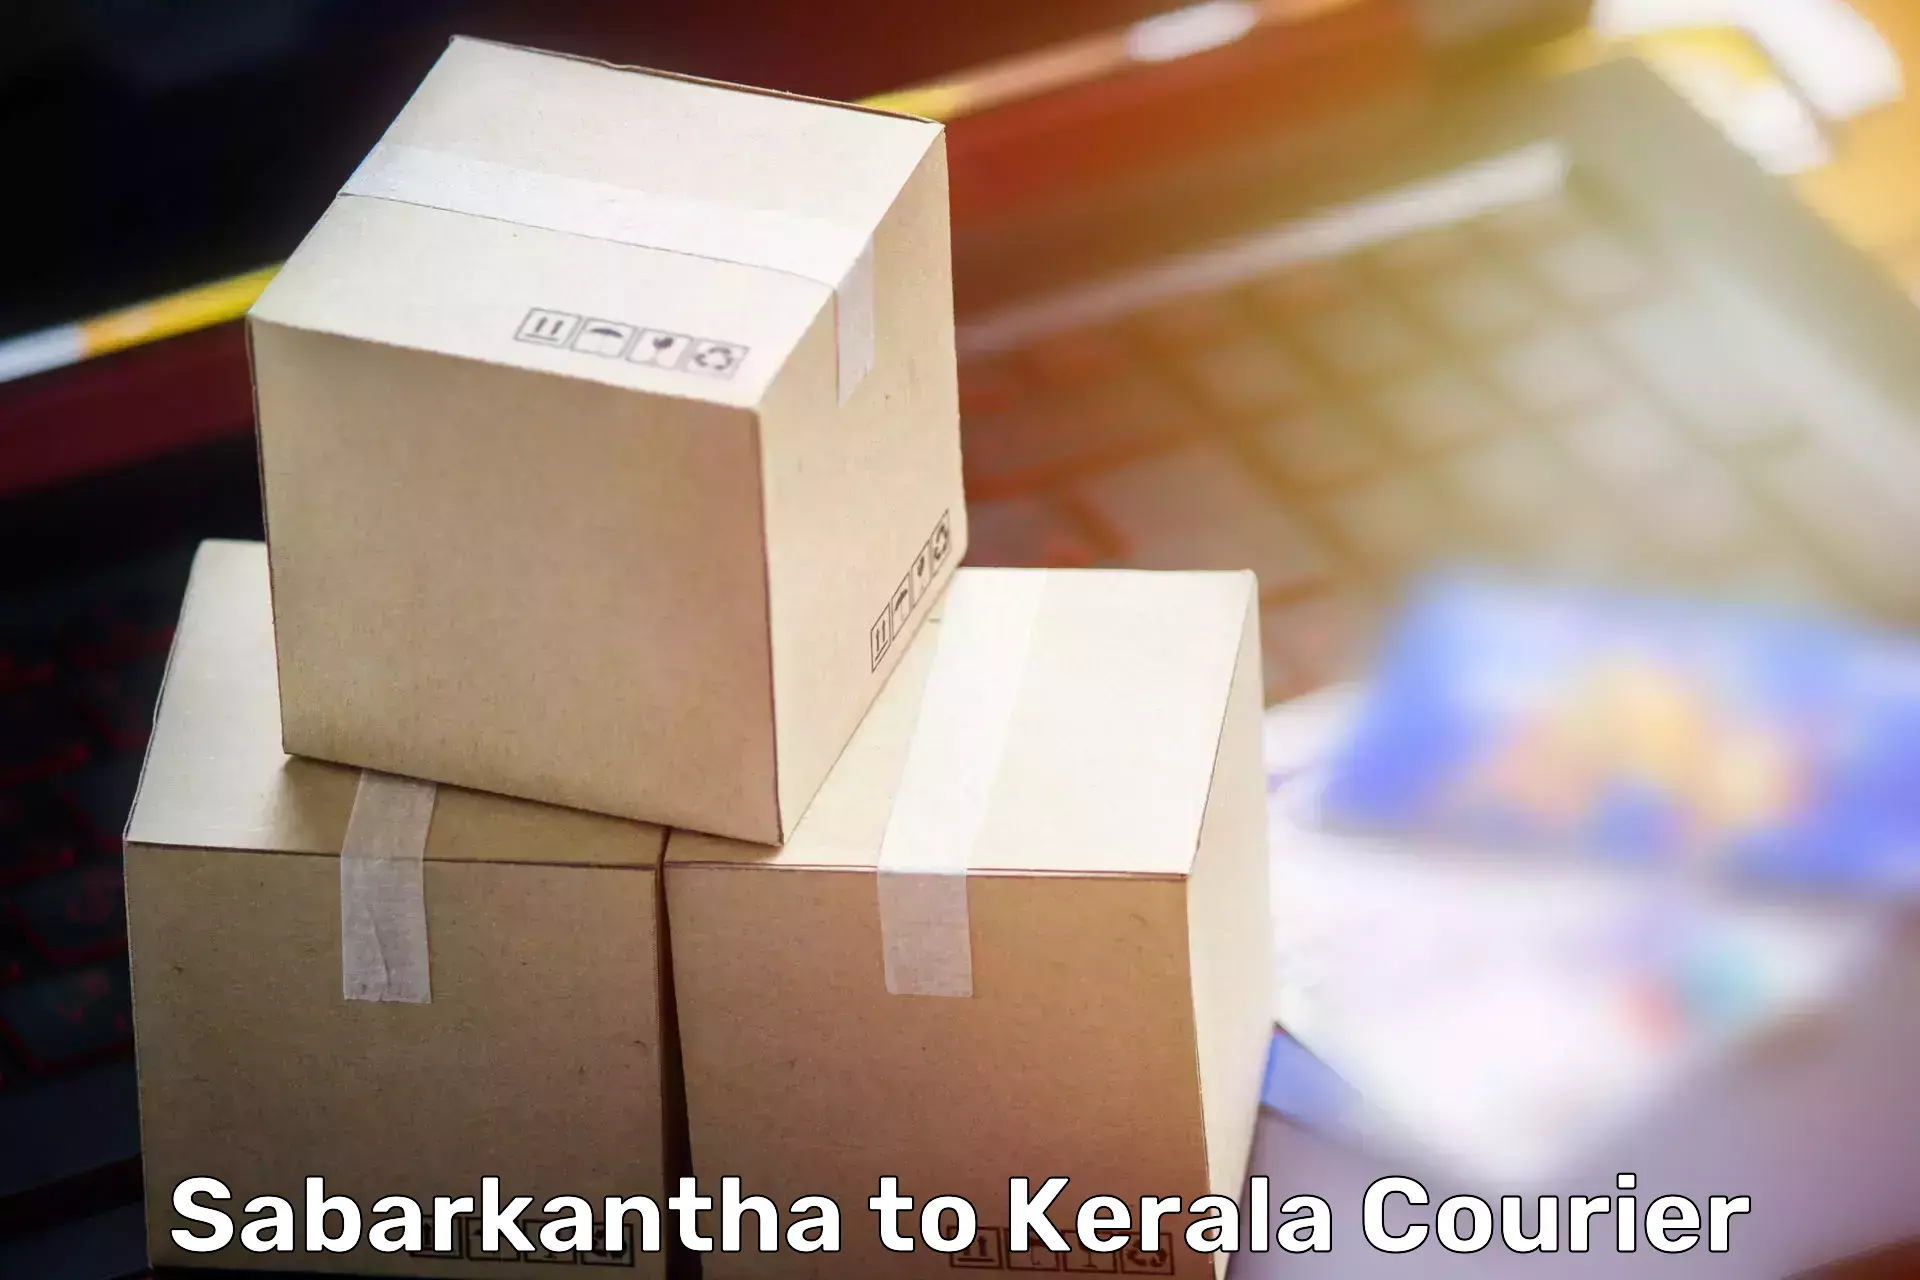 Furniture moving experts Sabarkantha to Koothattukulam